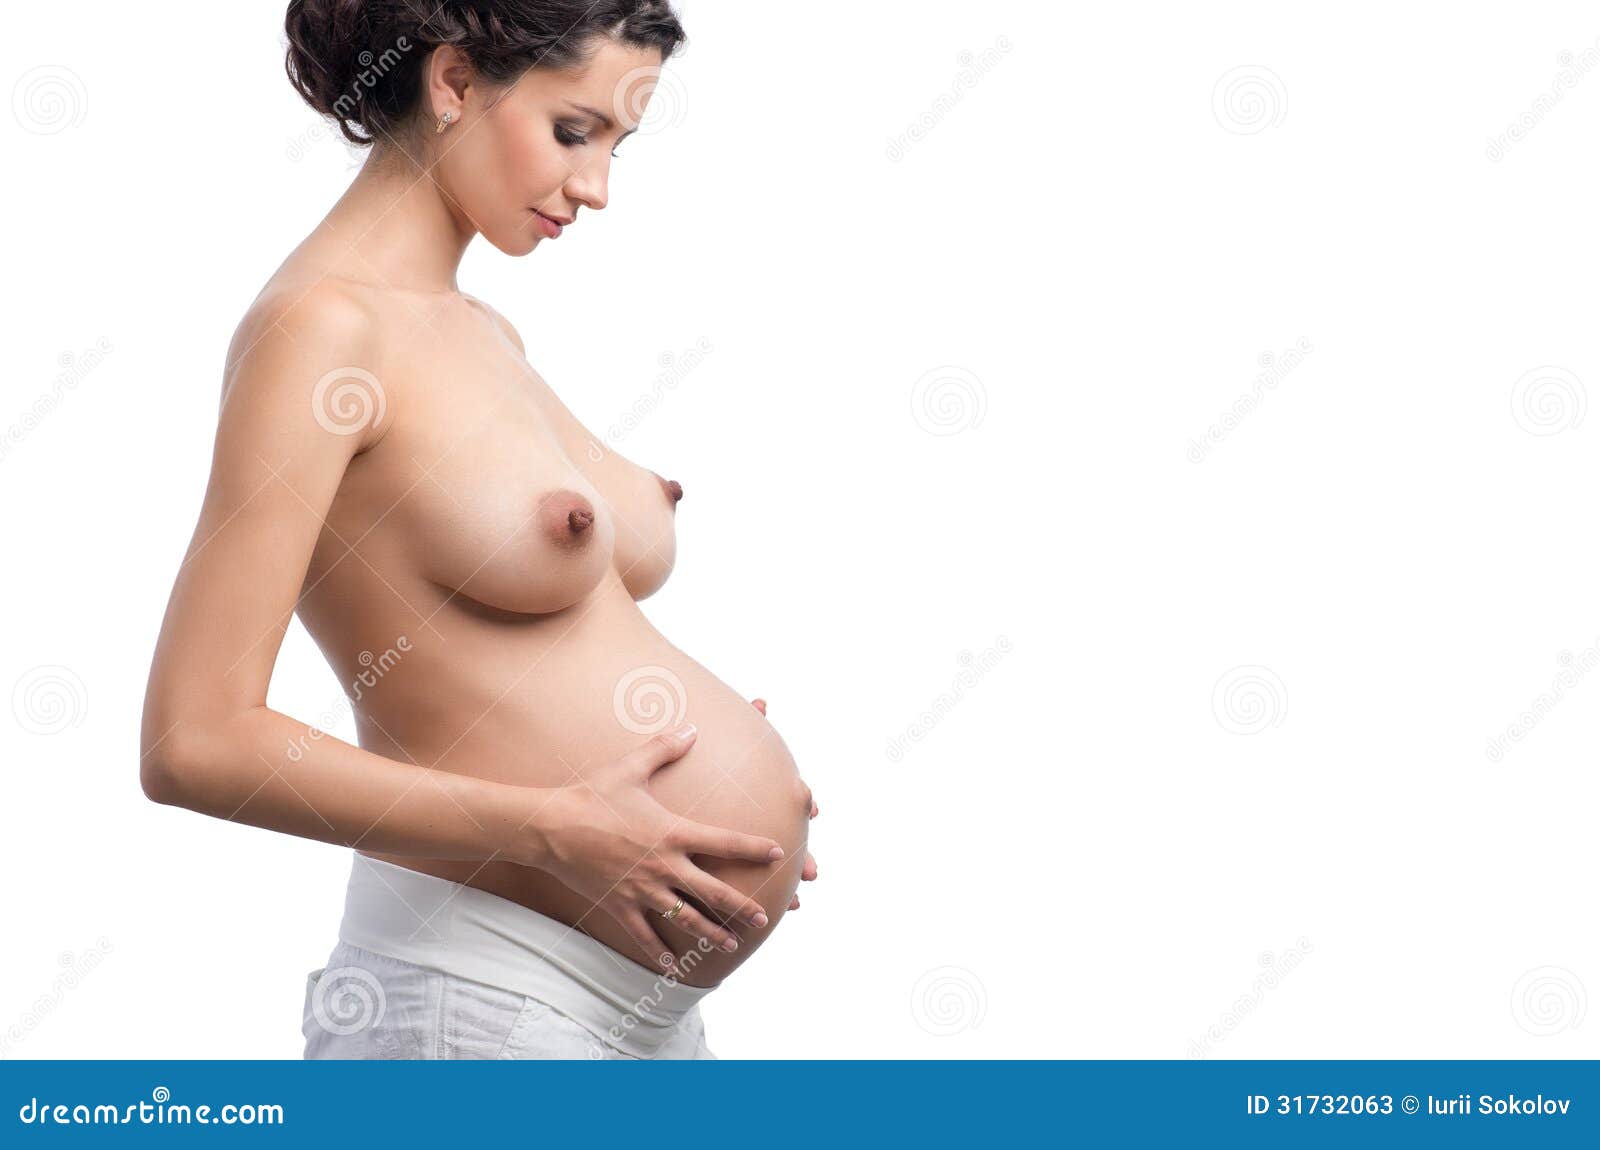 водичка из груди что это не беременна фото 95